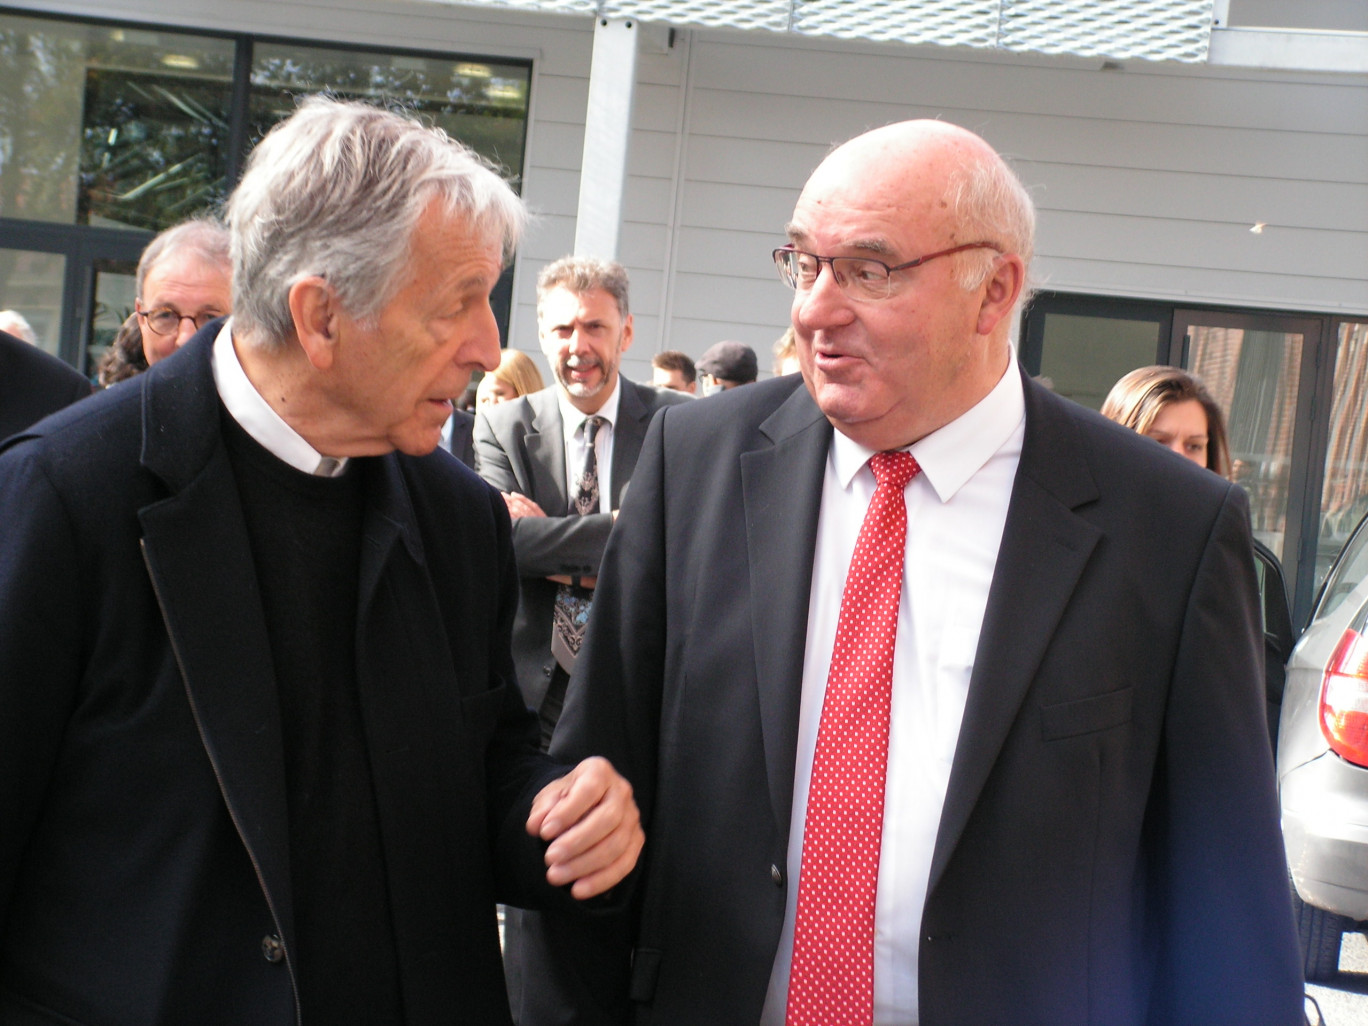 Le réalisateur Costa-Gavras en compagnie d’Alain Bocquet, président de la Communauté d’agglomération de la Porte du Hainaut.